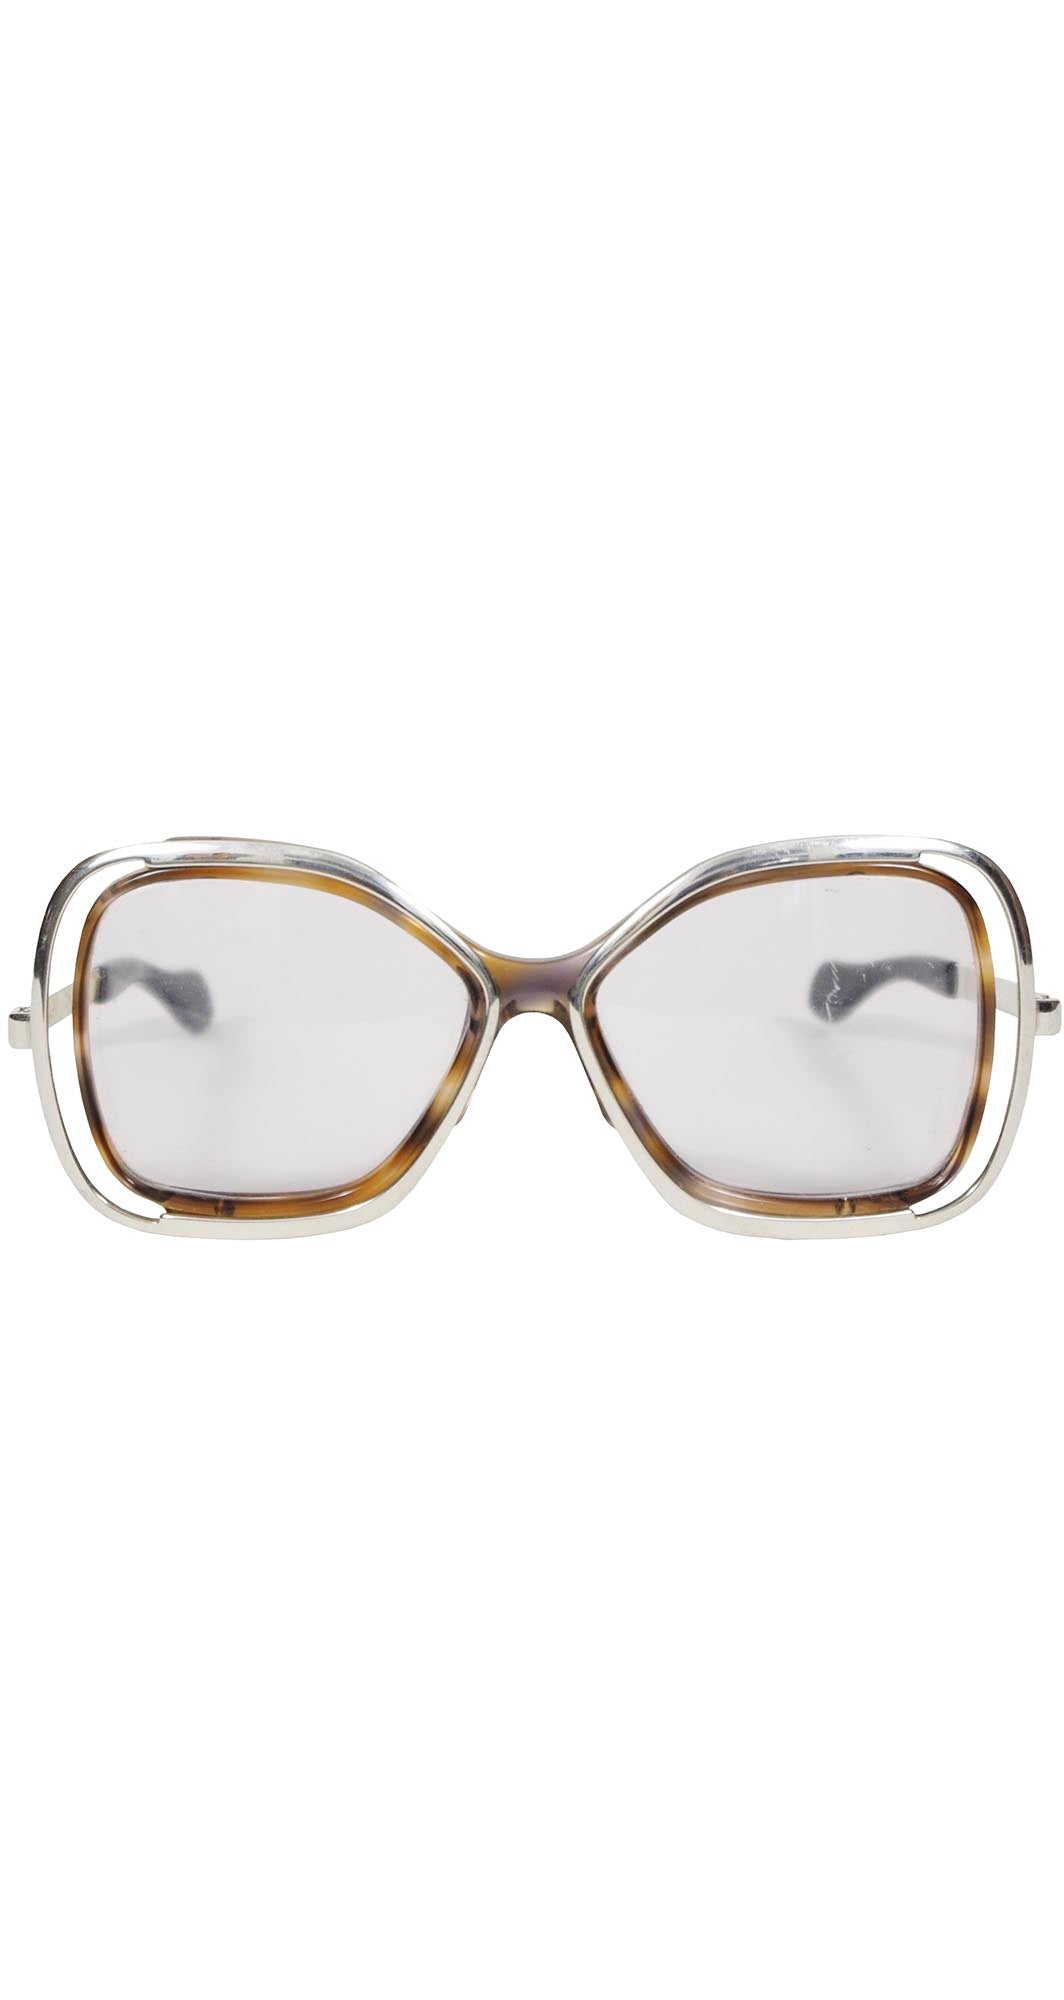 1978 Silver Rim Tortoise Shell Eyeglasses Frames Mod.500